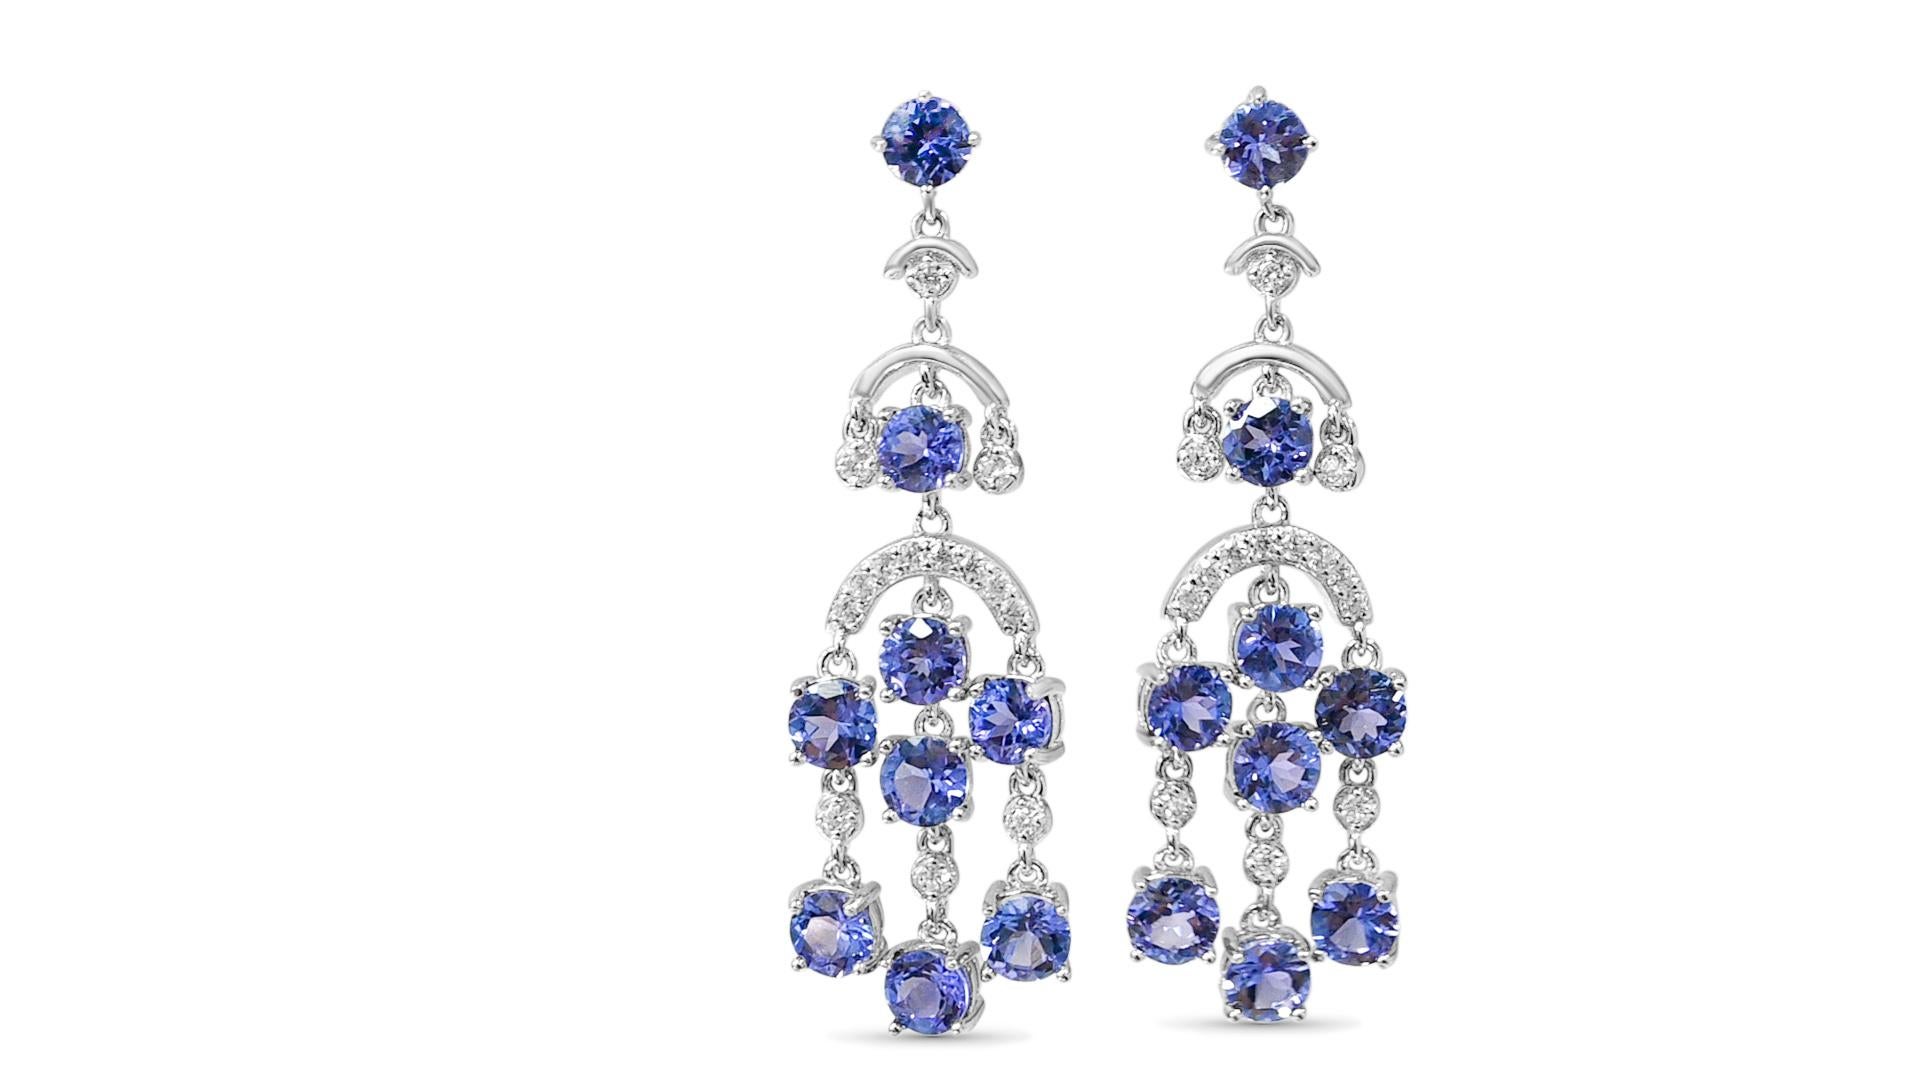 Bienvenue à Blue Star Gems NY LLC ! Découvrez les boucles d'oreilles de fiançailles et de mariage les plus populaires, qu'elles soient classiques ou d'inspiration vintage. Nous proposons des bijoux joyeux à porter au quotidien. Juste pour vous. Nous